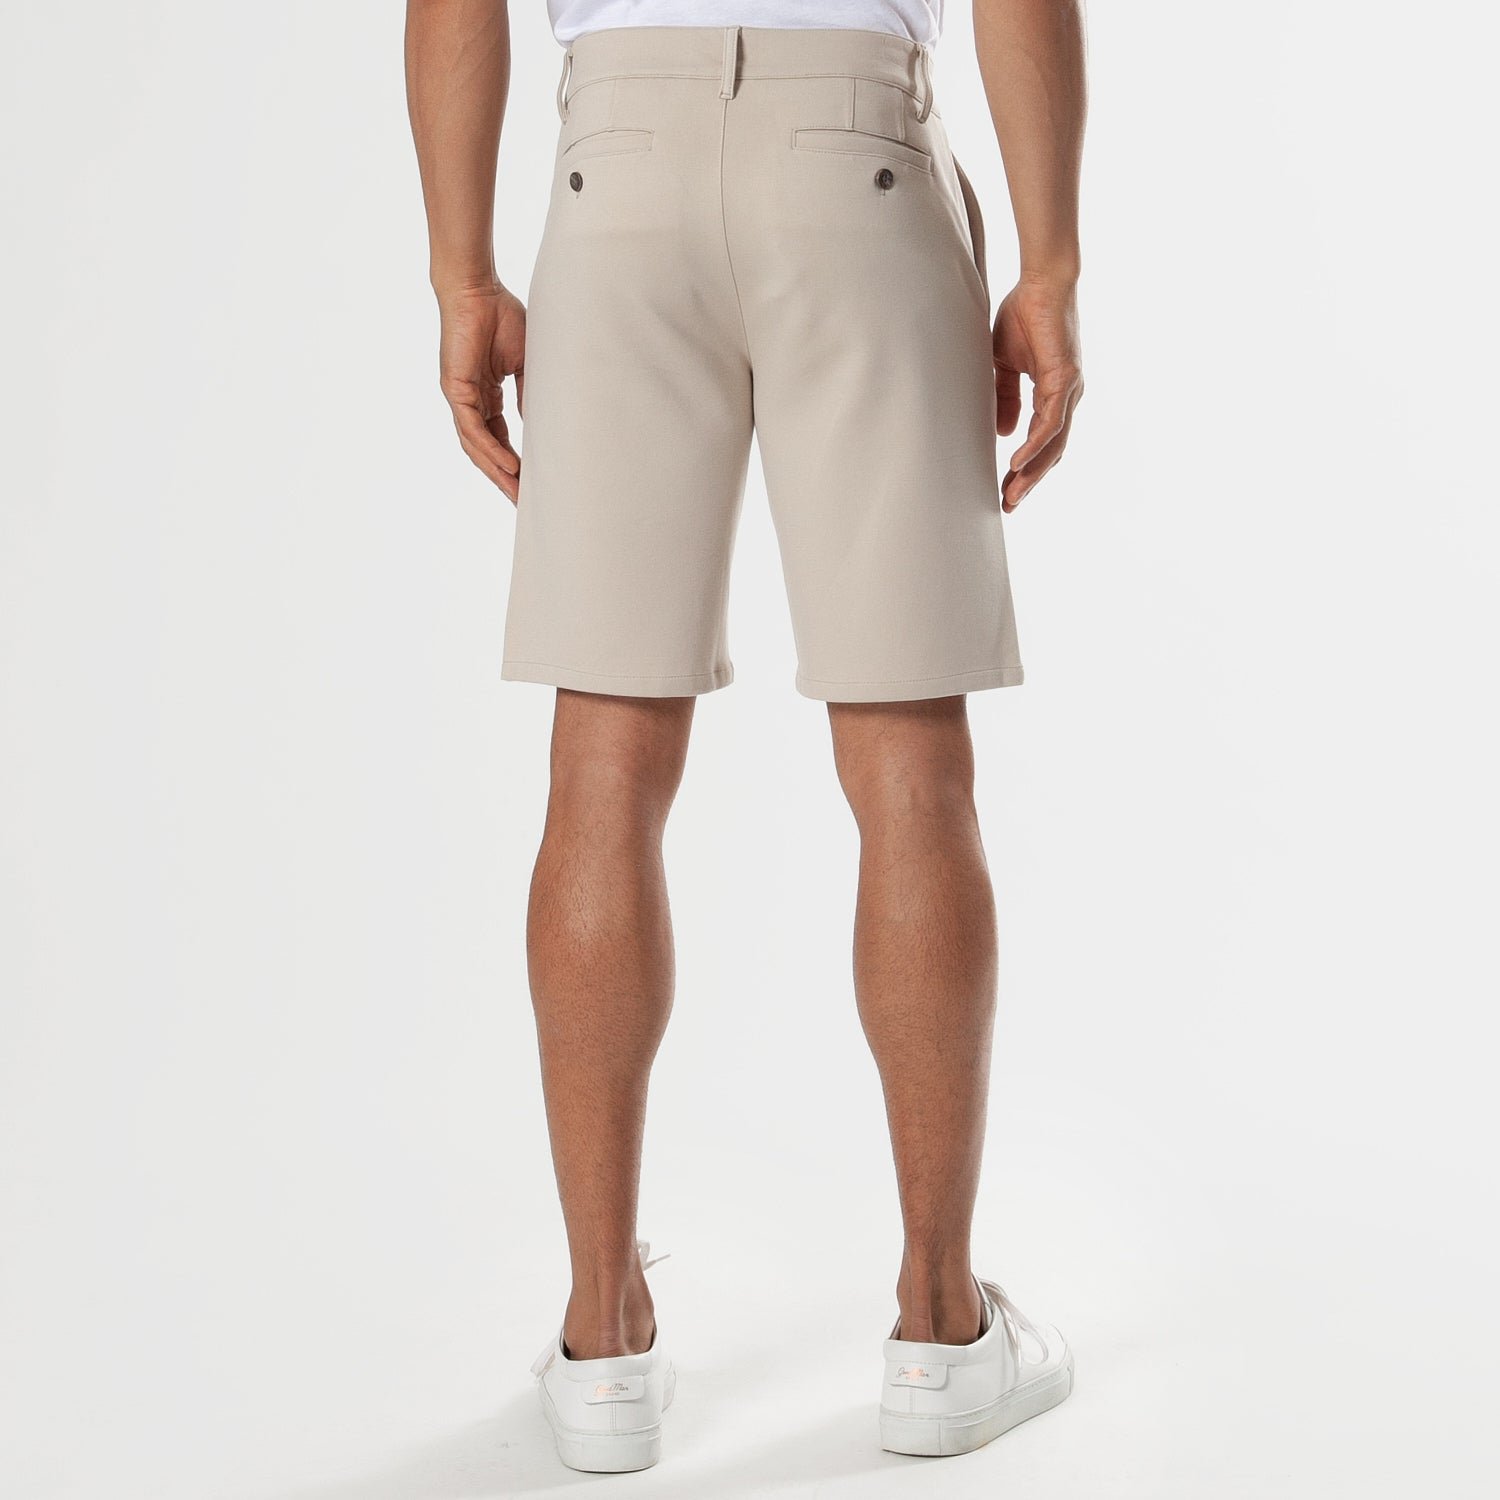 9.5" Sandstone Comfort Chino Shorts